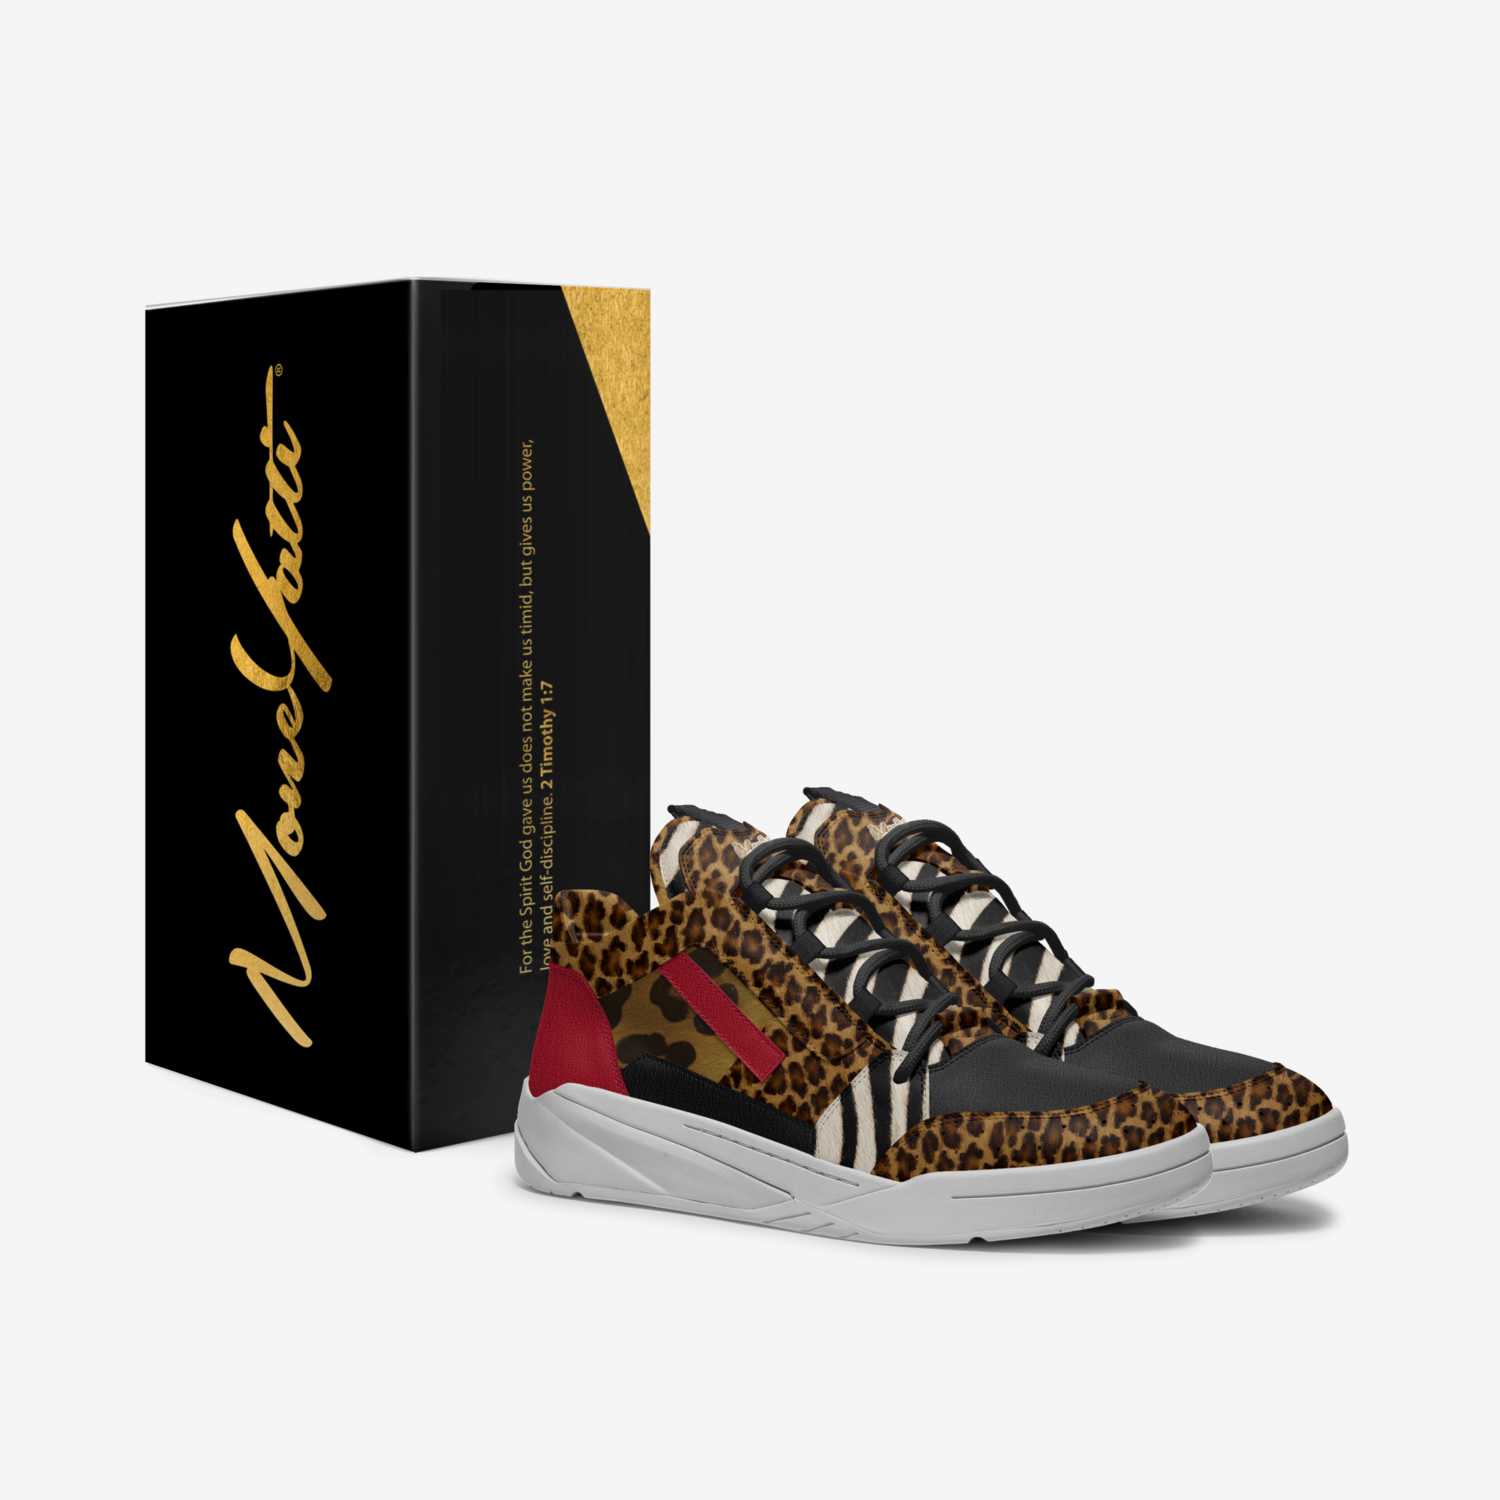 MONEYATTI TURBO 018 custom made in Italy shoes by Moneyatti Brand | Box view